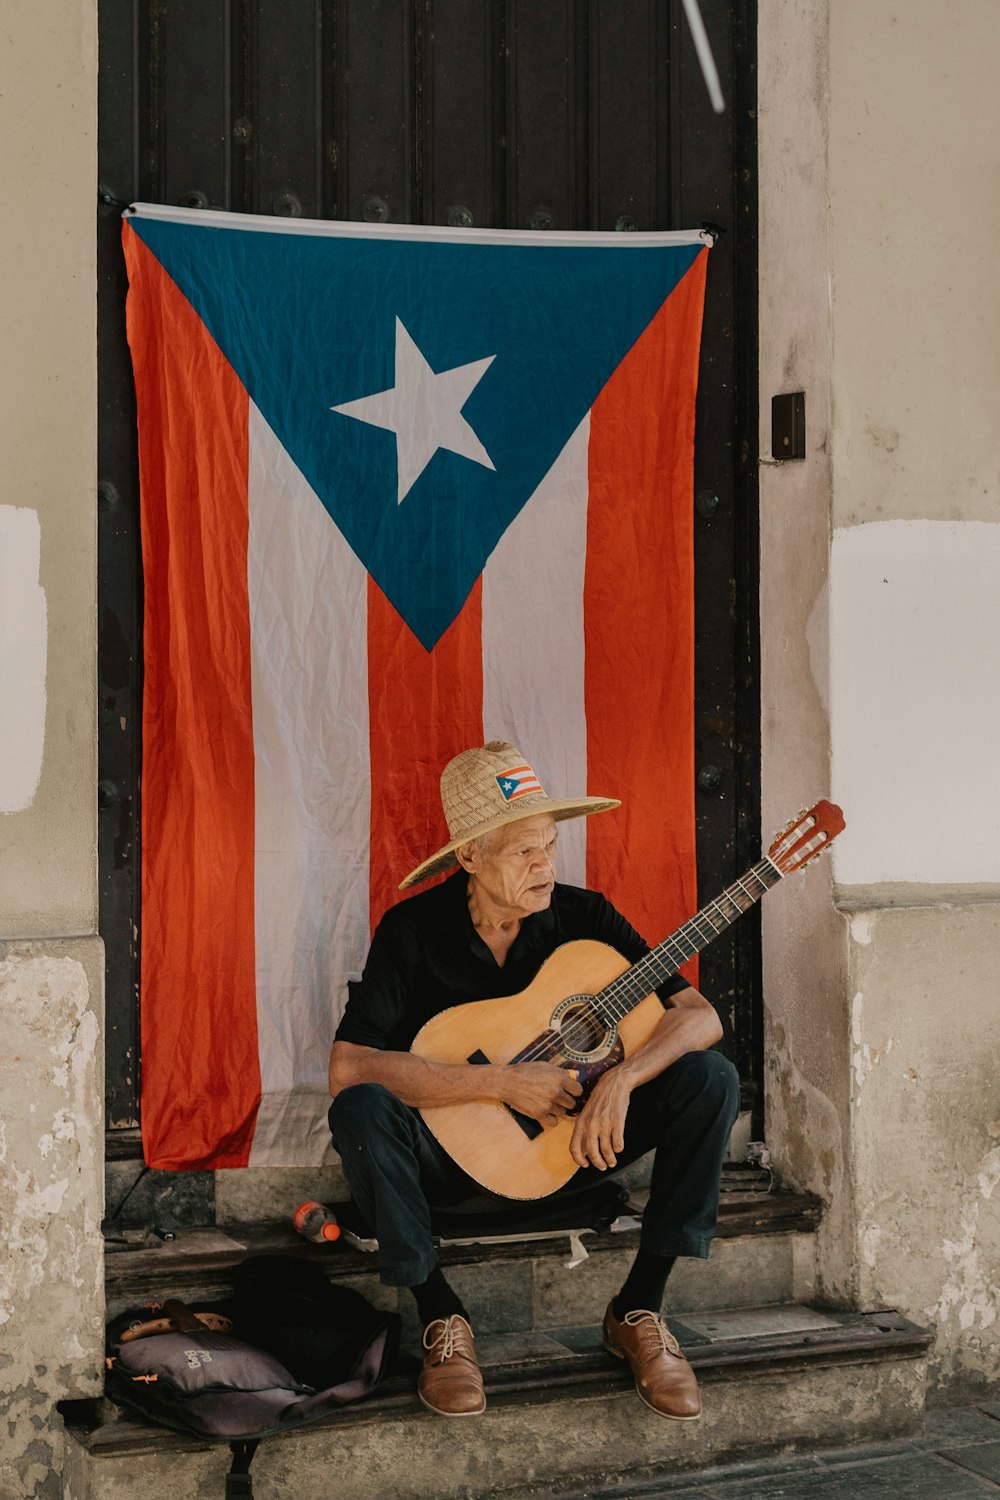 hombre sosteniendo la guitarra sentado frente a la bandera colgada